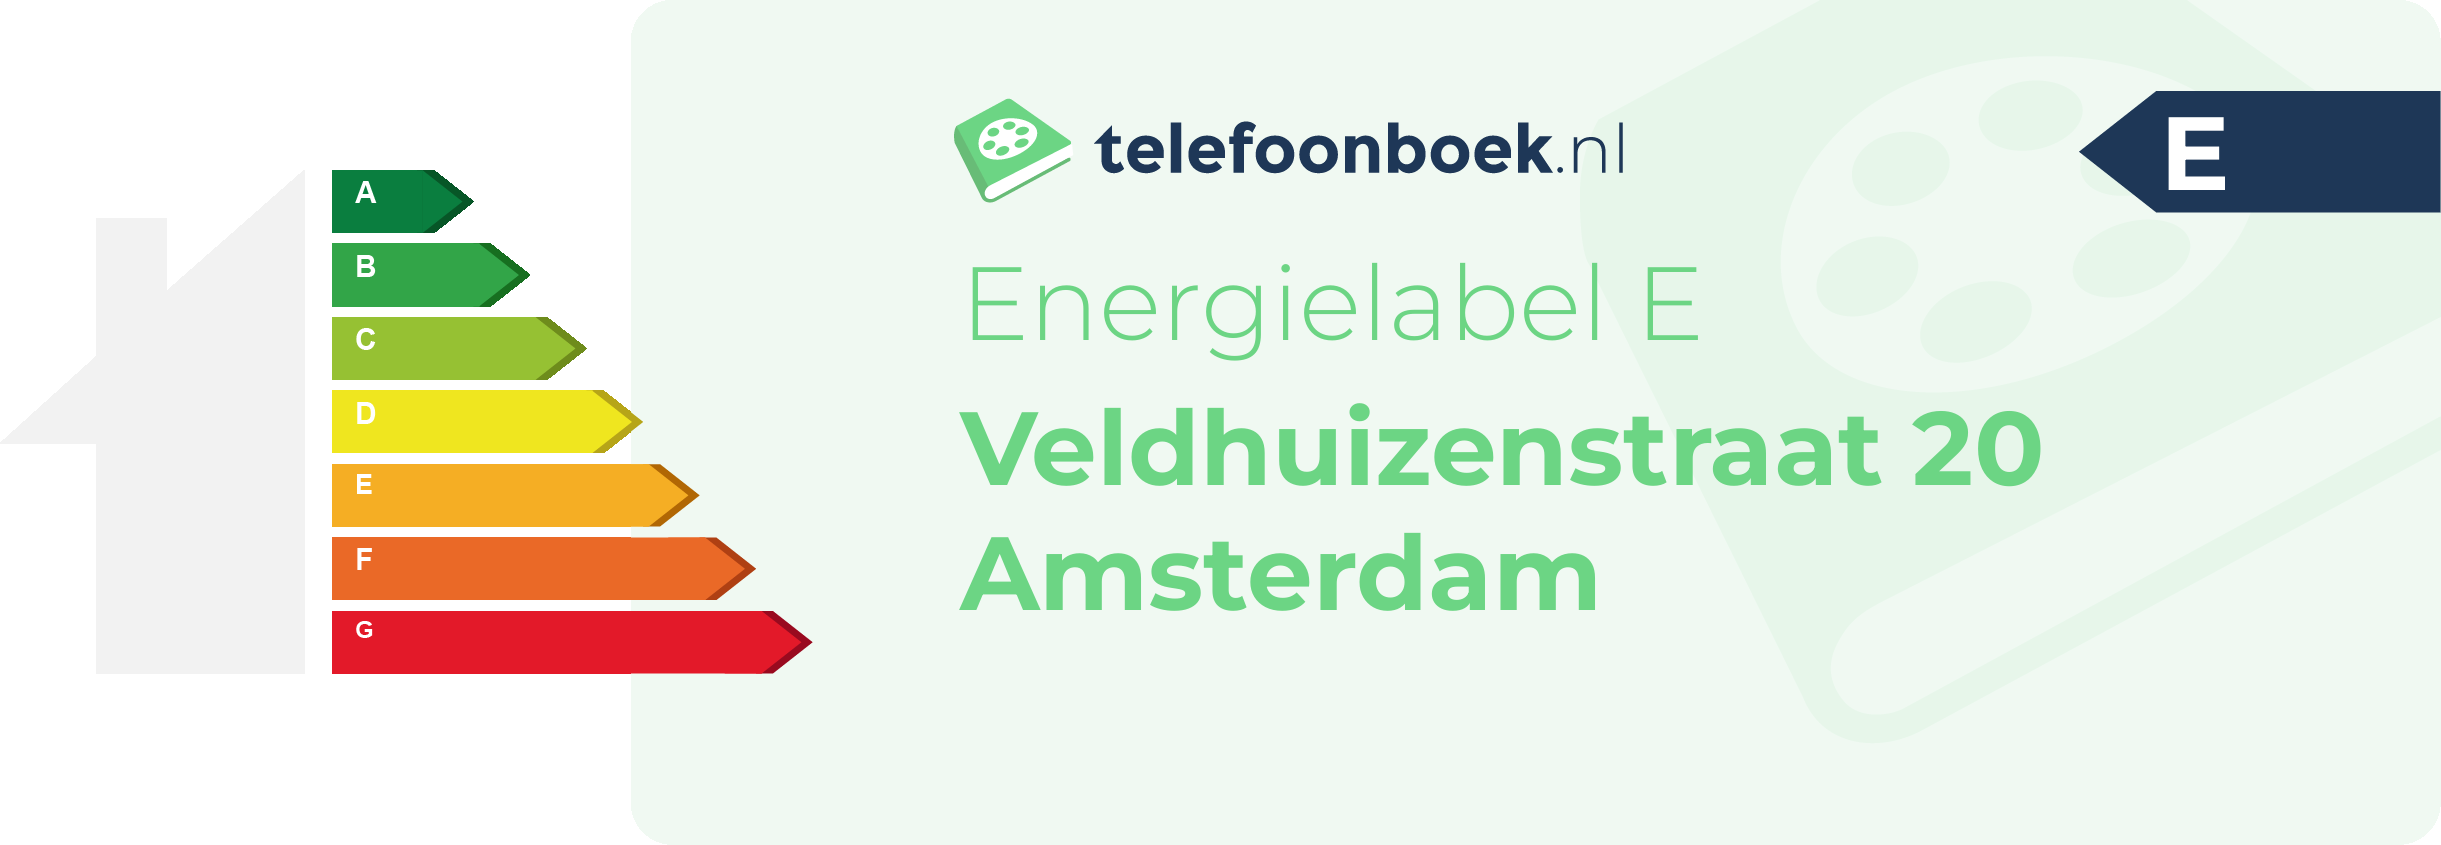 Energielabel Veldhuizenstraat 20 Amsterdam